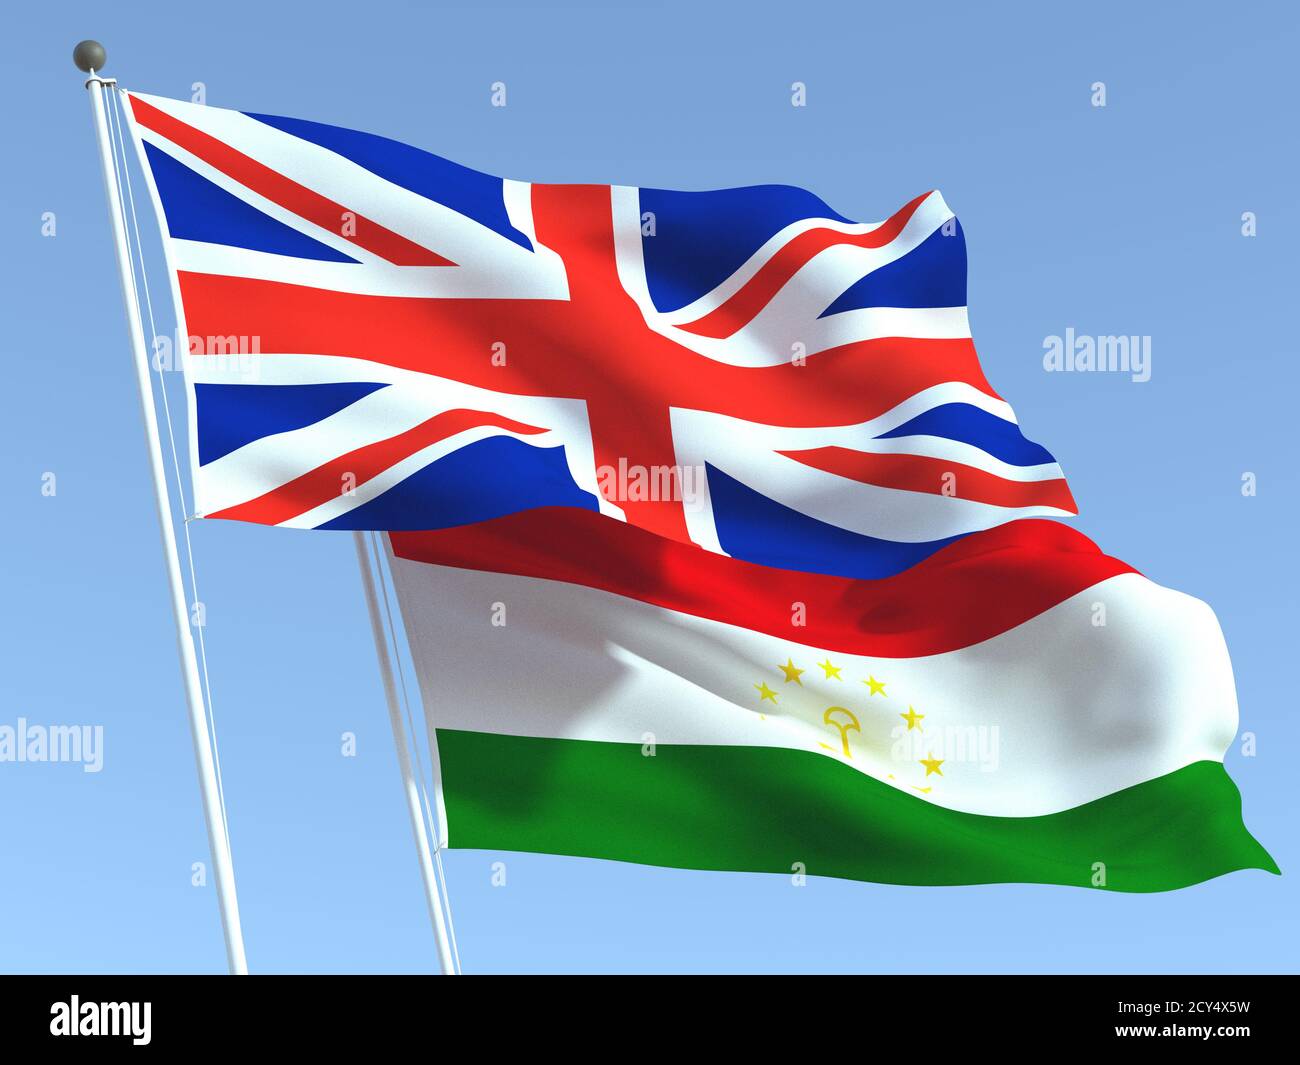 Deux drapeaux du Royaume-Uni et du Tadjikistan sur le ciel bleu. Expérience professionnelle de haute qualité. illustration 3d Banque D'Images